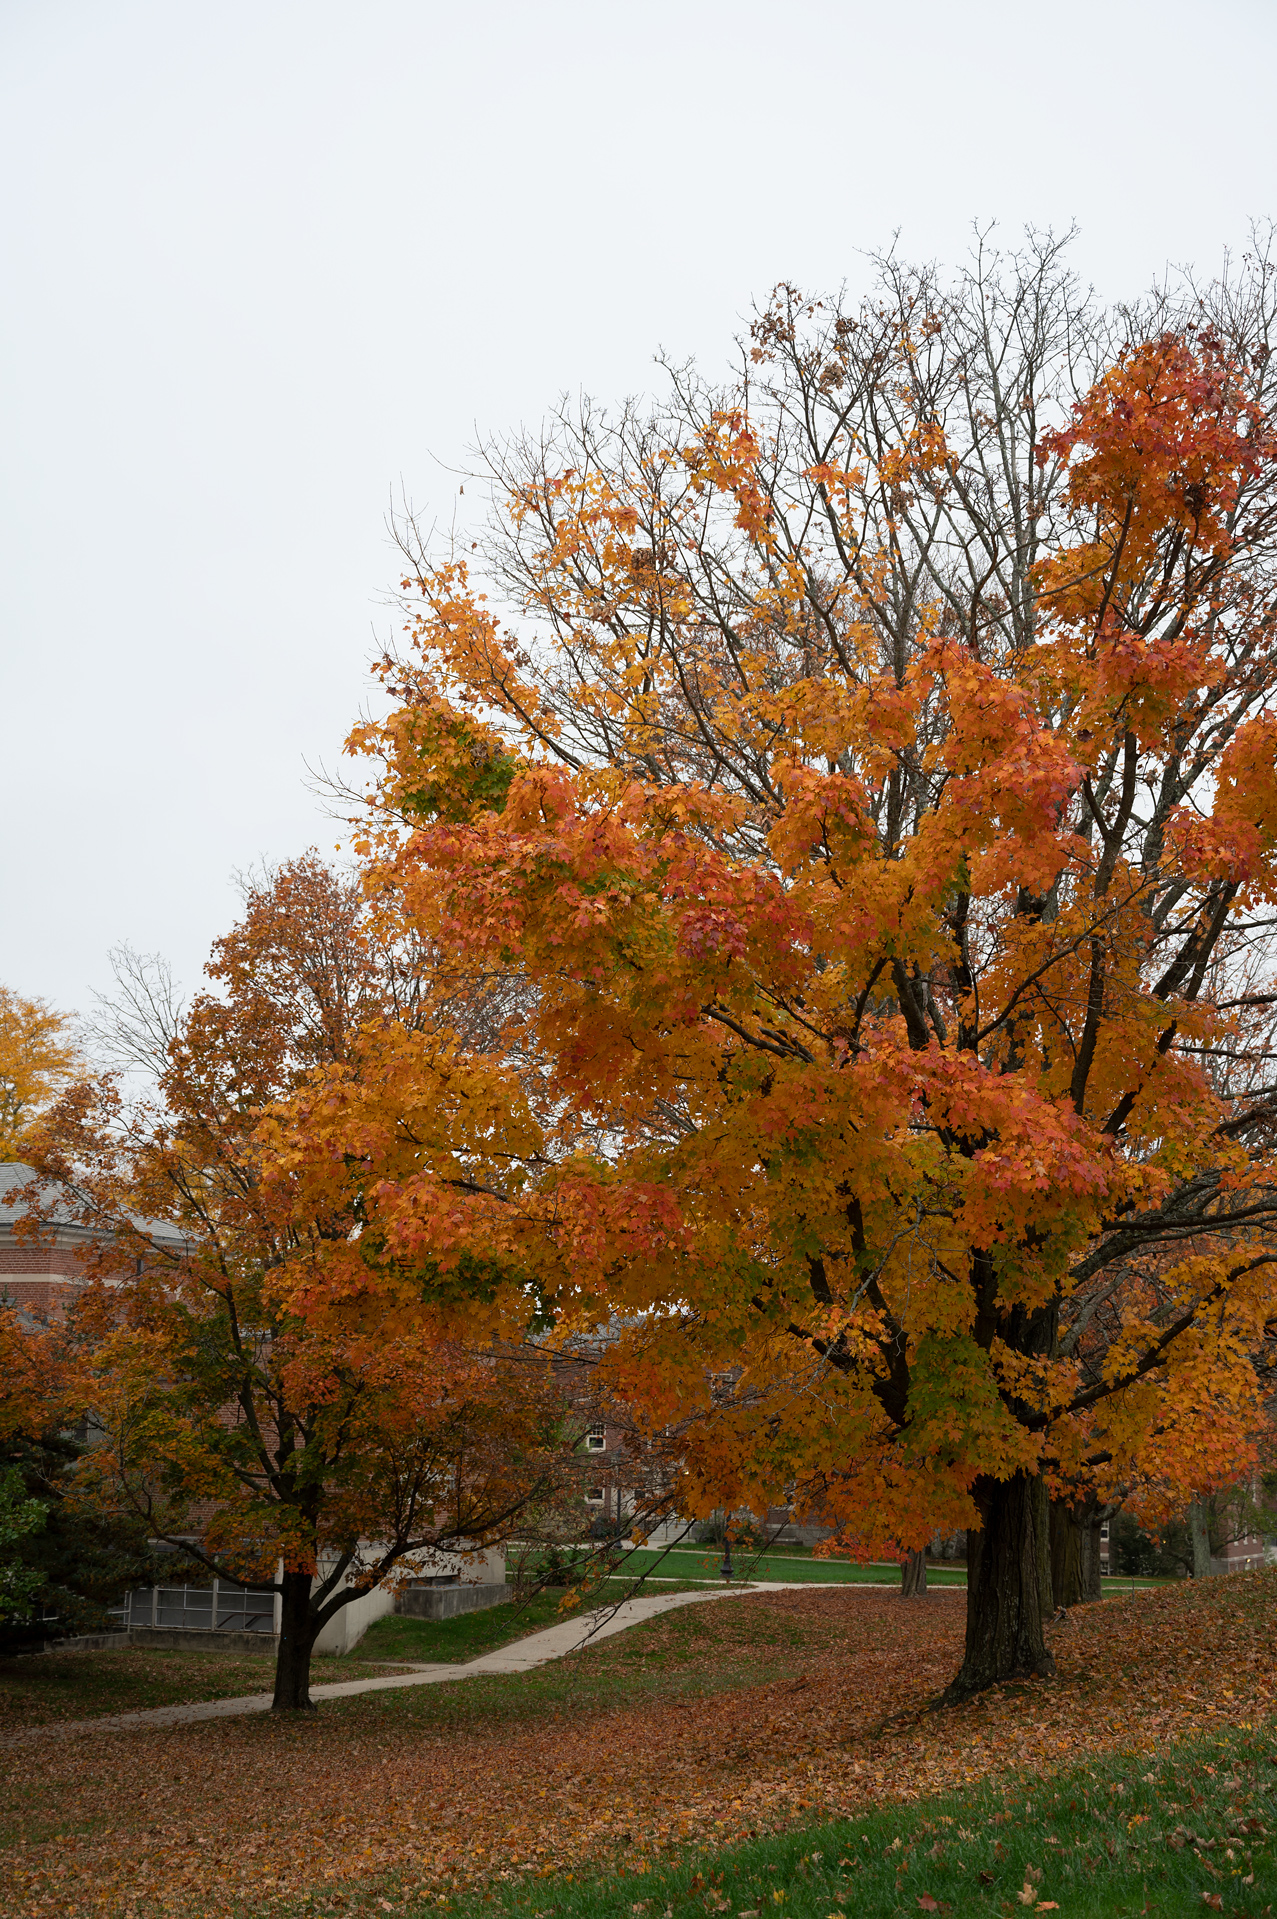 Orange leaves on Maple tree